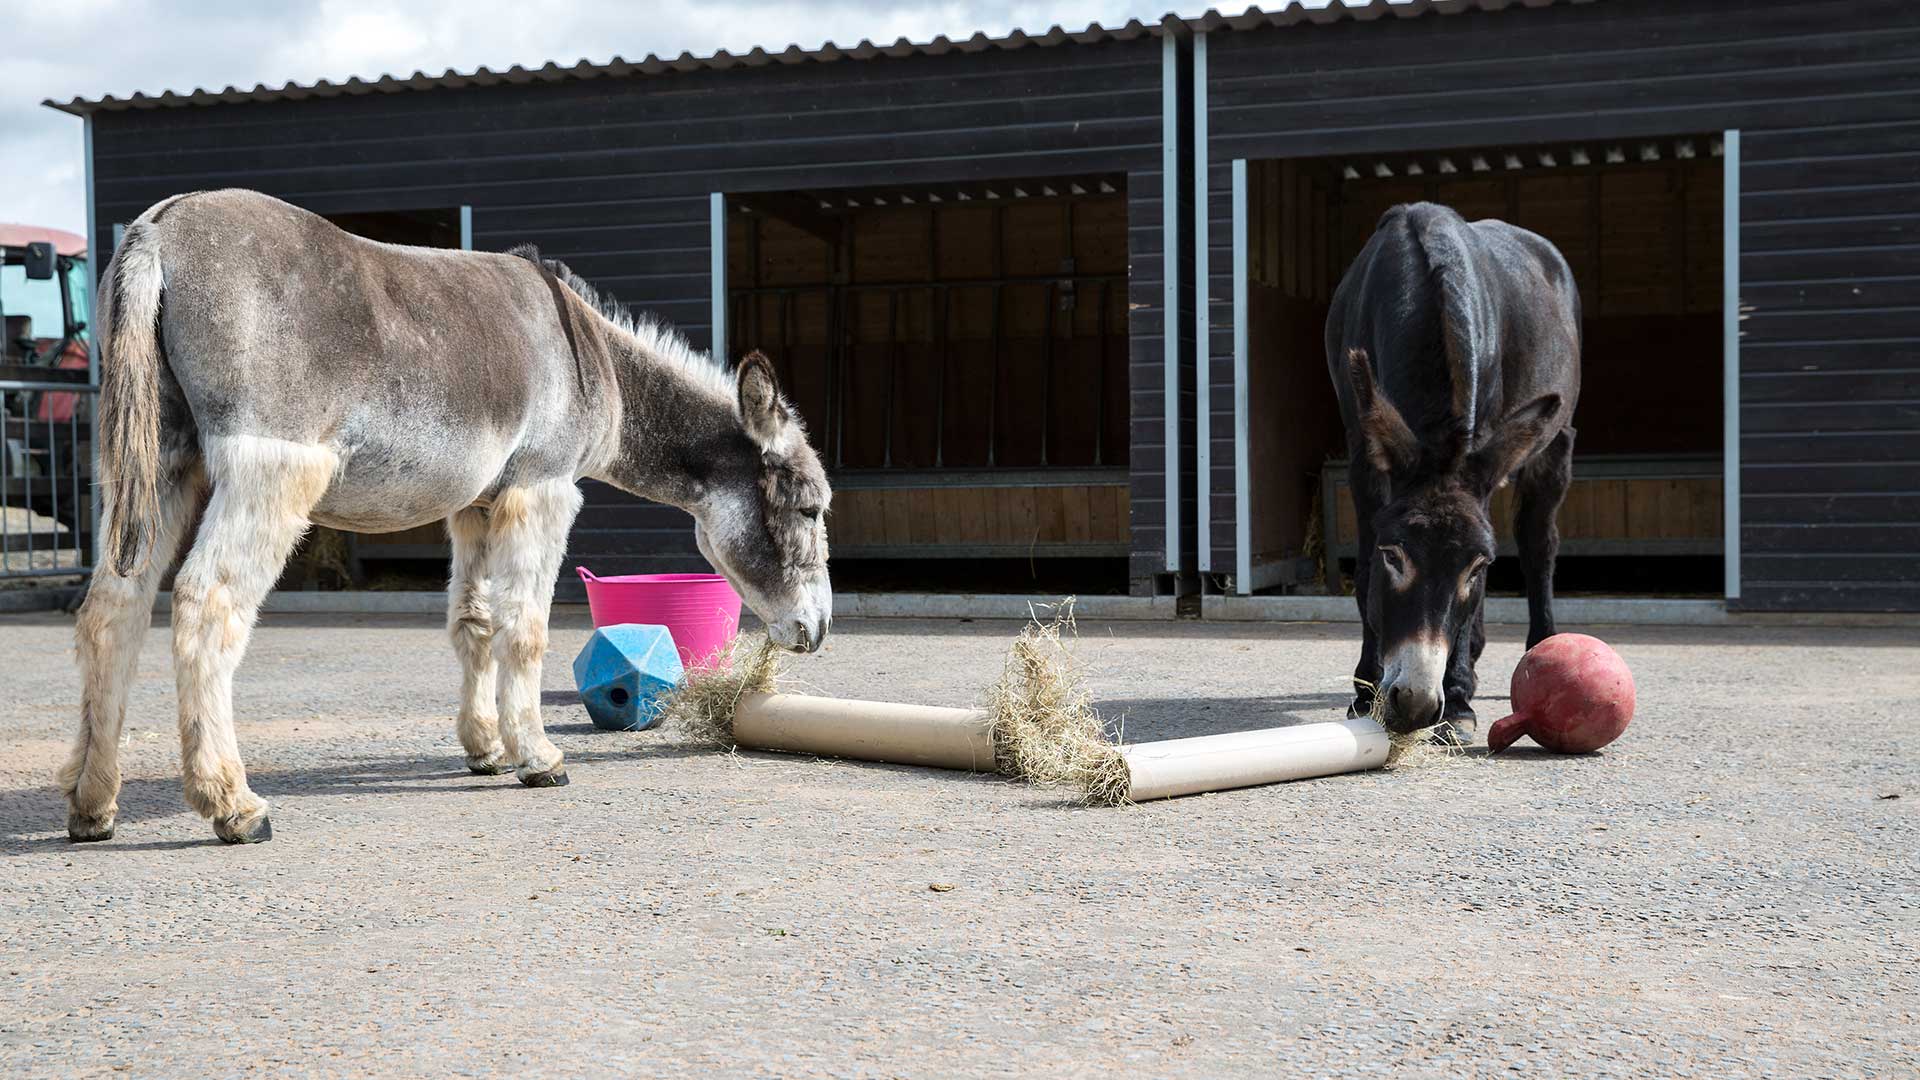 Alfie and Benjy, Belfast adoption donkeys enjoying some enrichment activities